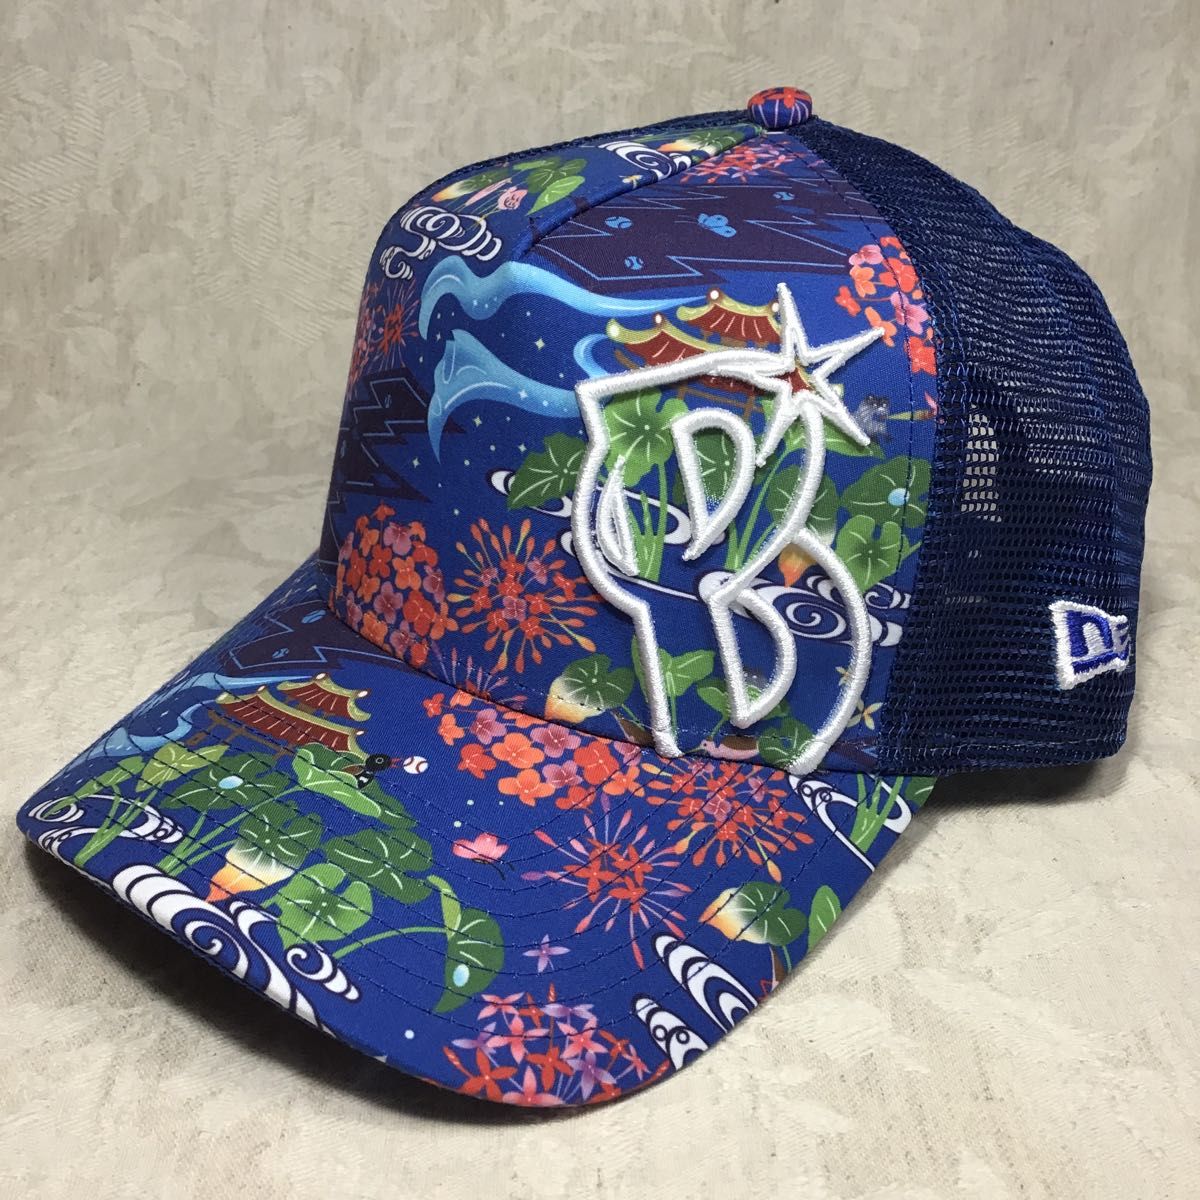 未使用 横浜DeNAベイスターズ 2020年 沖縄 宜野湾キャンプ NEW ERA キャップ 帽子